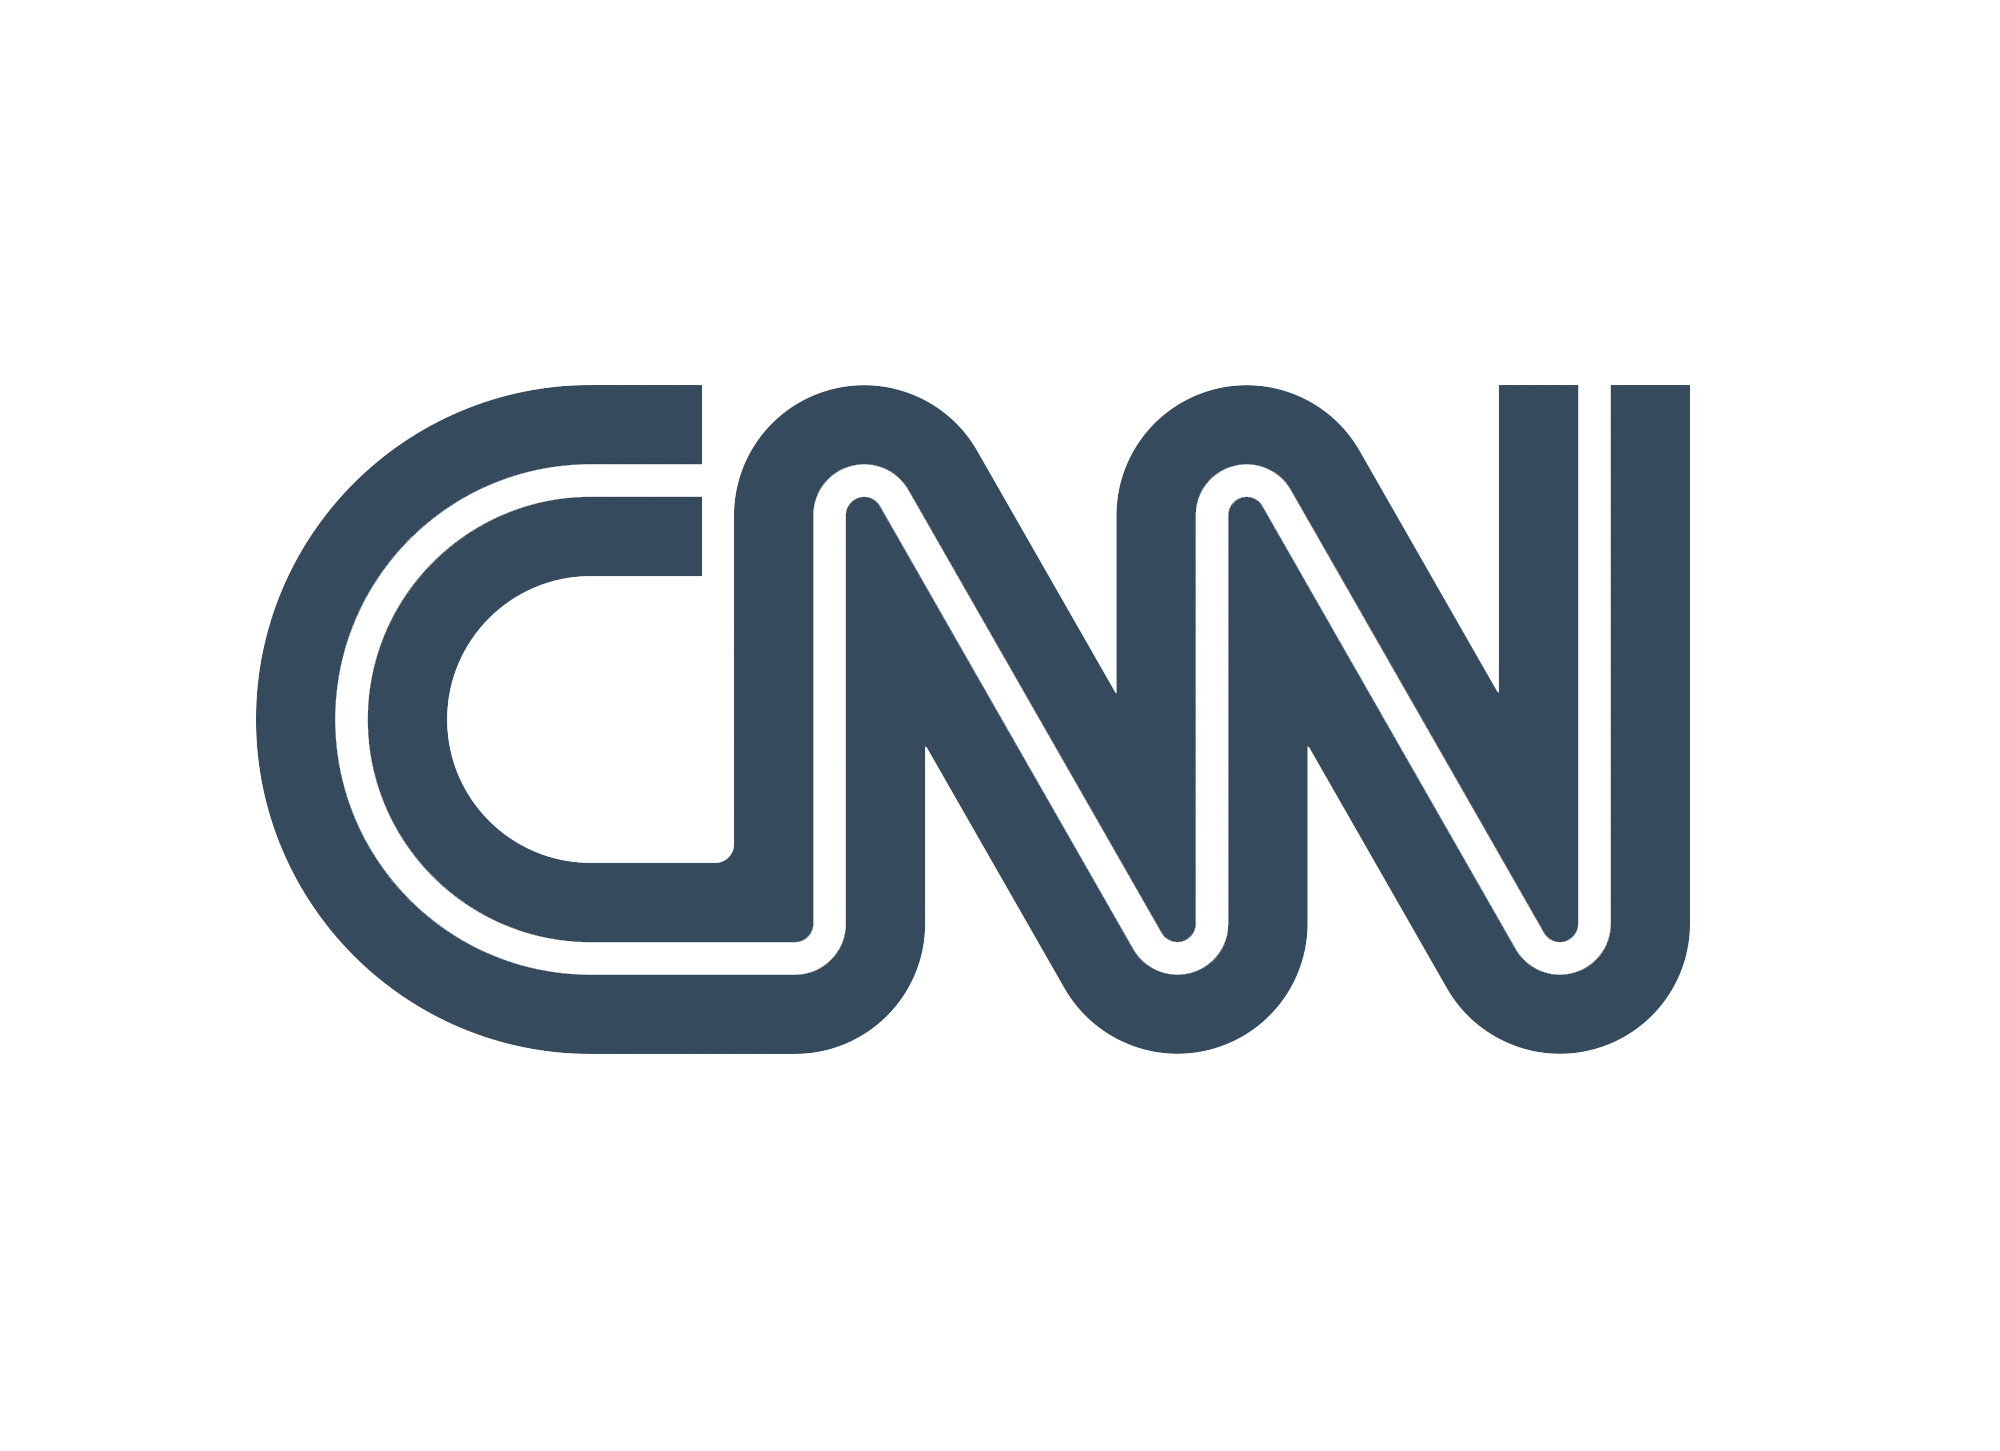 CNN - Grayscale logo